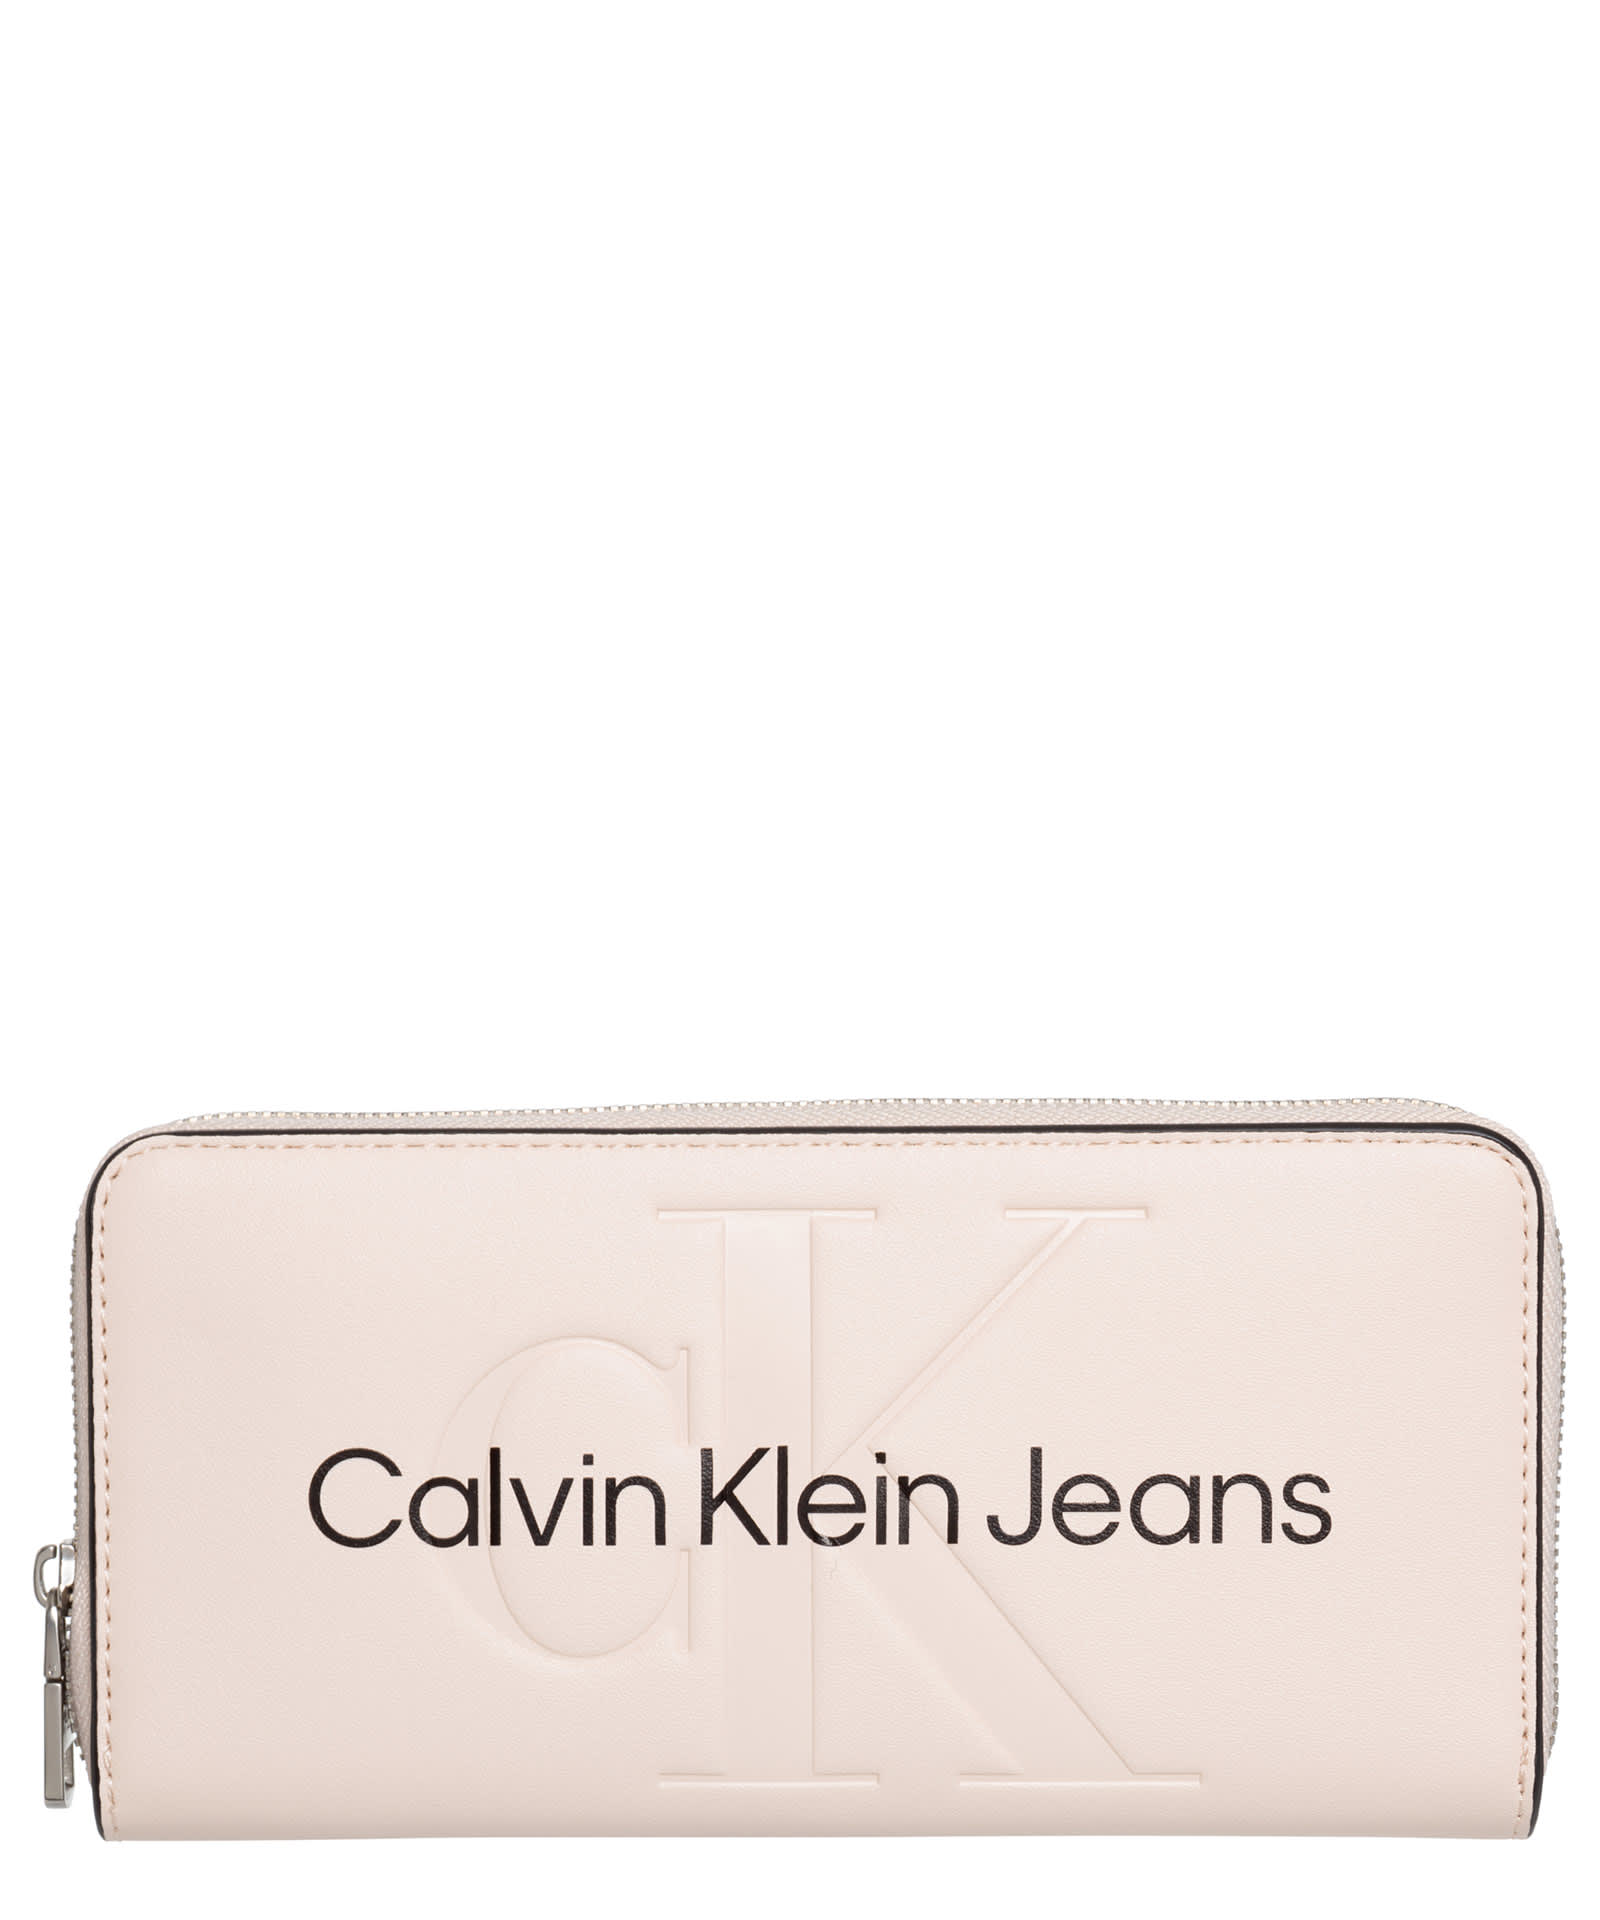 Calvin Klein Jeans Est.1978 Wallet In Ballet